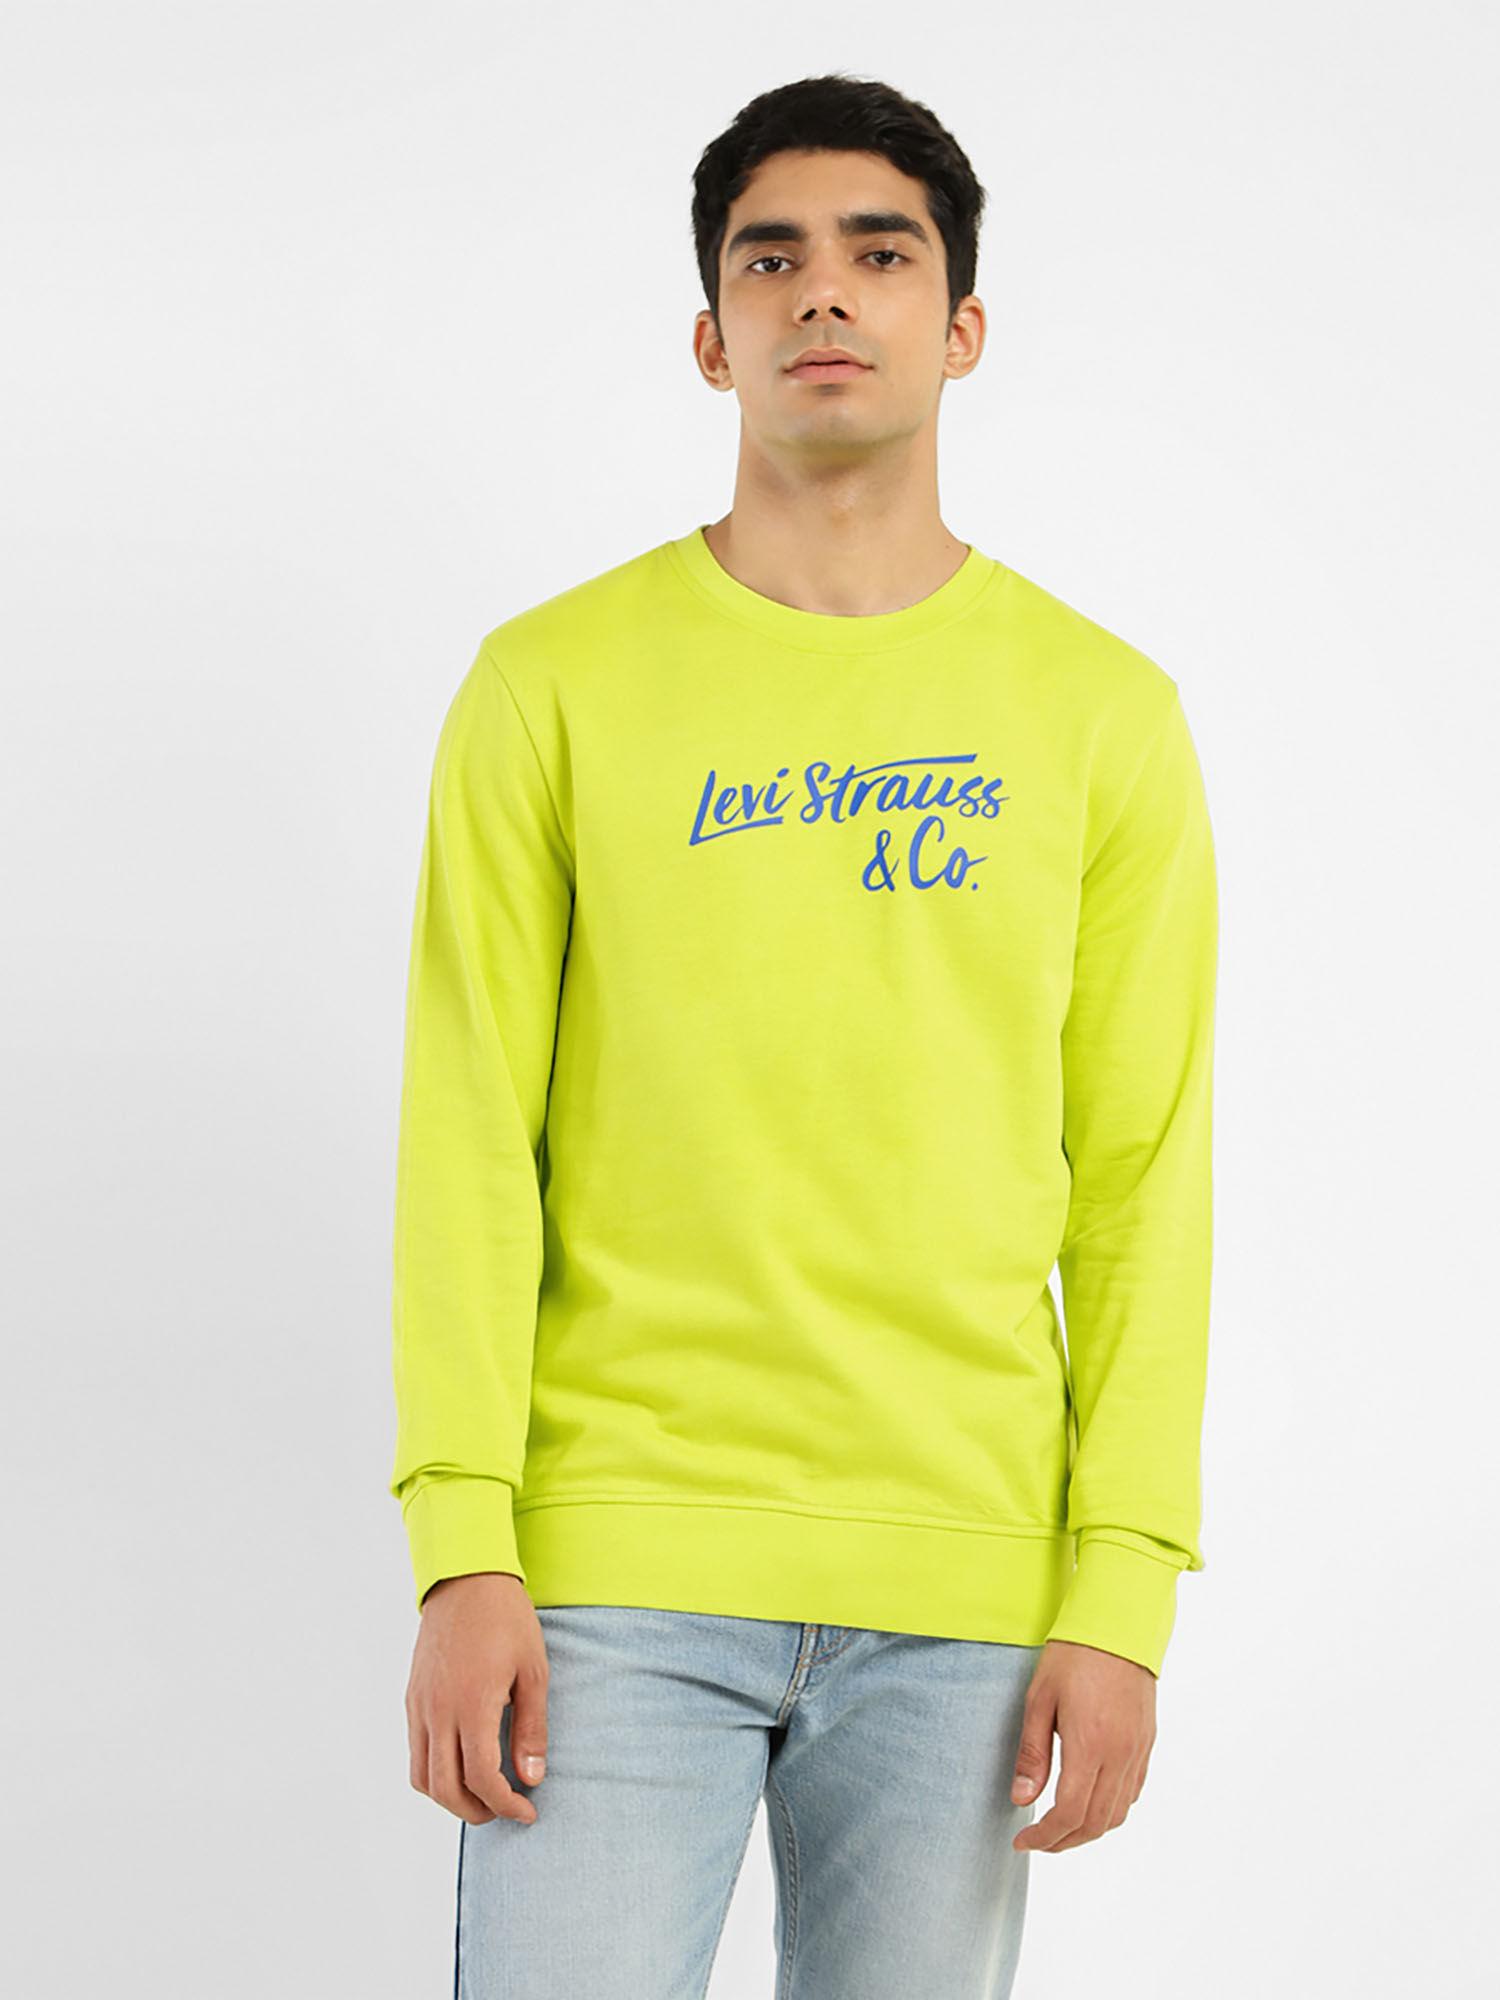 men's graphic print green crew neck sweatshirt